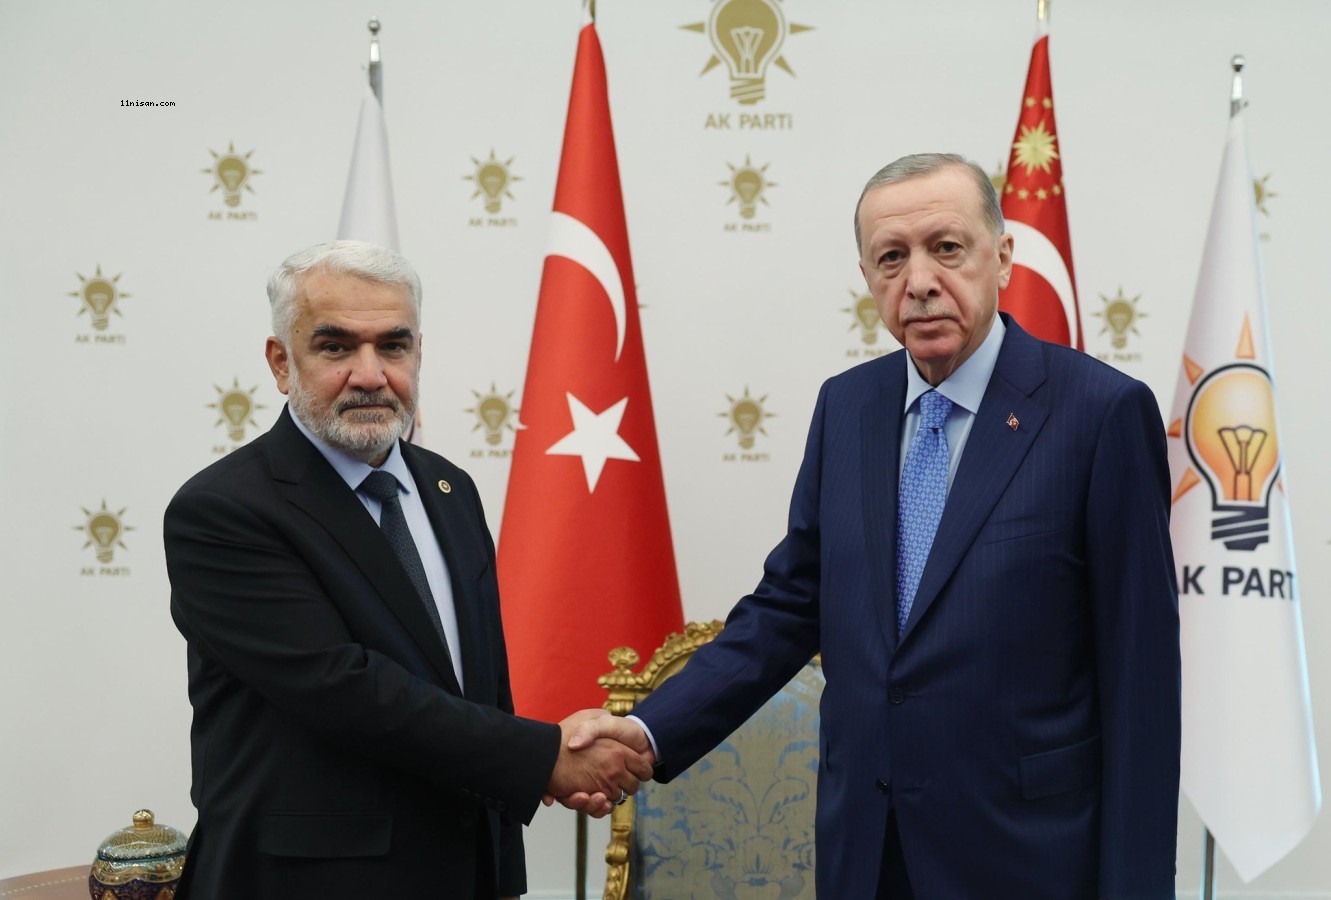 Cumhurbaşkanı Erdoğan, Yapıcıoğlu'nu AK Parti Genel Merkezi'nde kabul etti.;